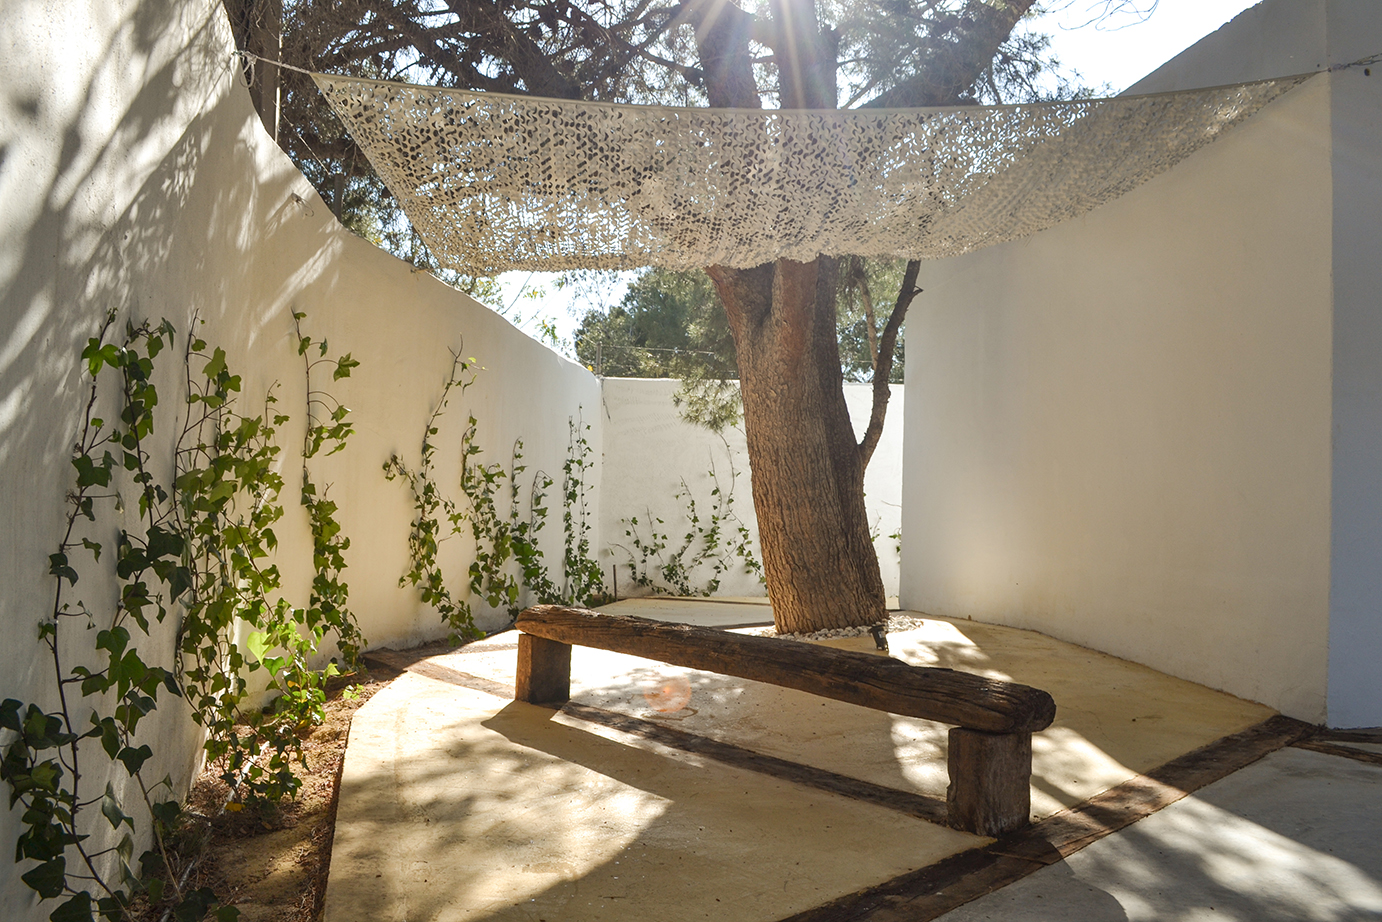 La sala y su jardín - Un proyecto de HAHA Arquitectura